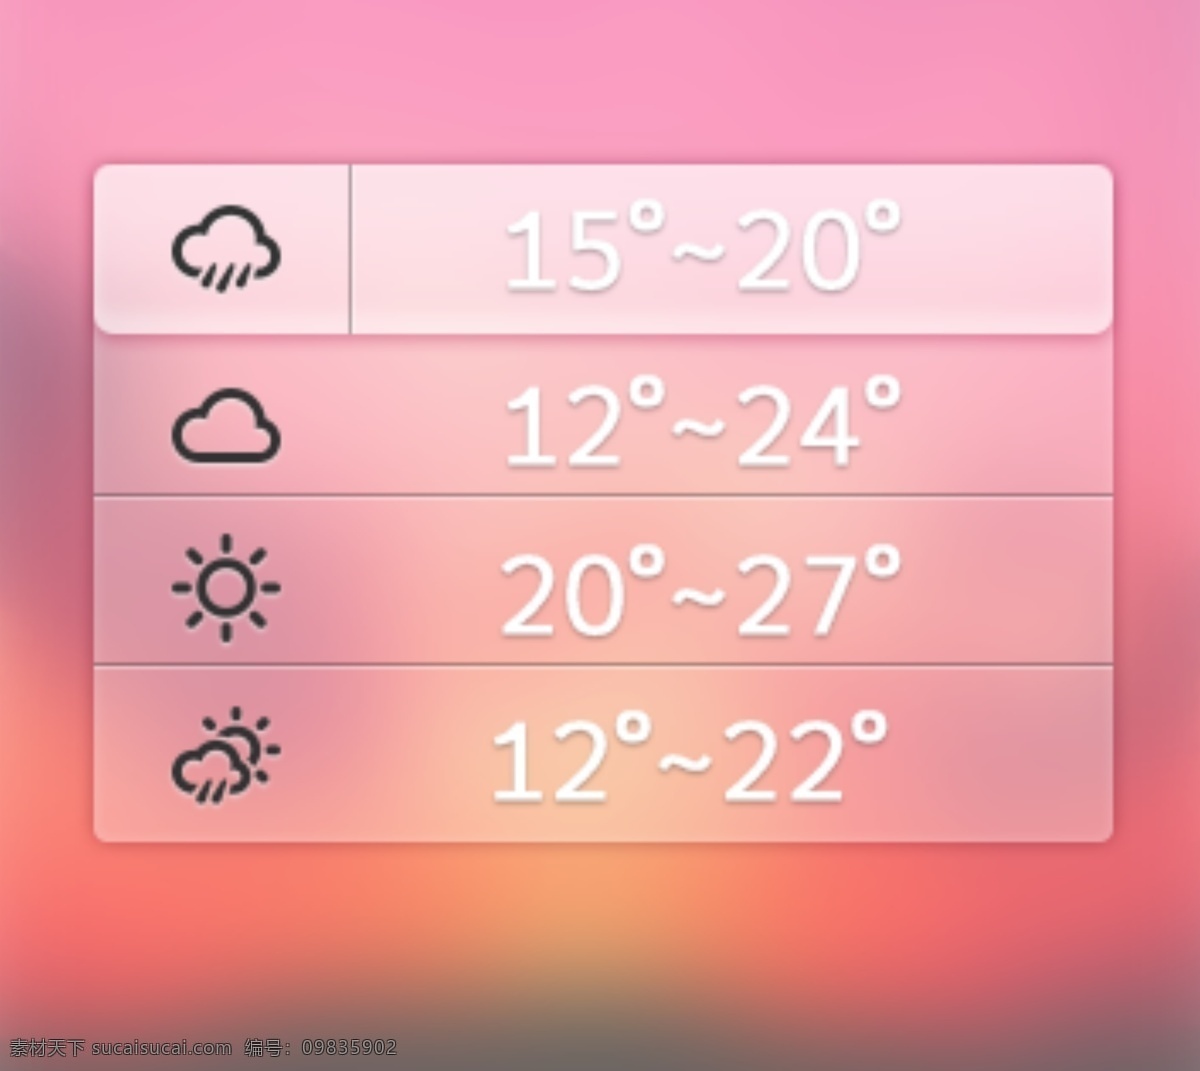 一个 毛玻璃 背景 天气 插件 界面 风景 投影 图标 温度 质感 手机 app app界面